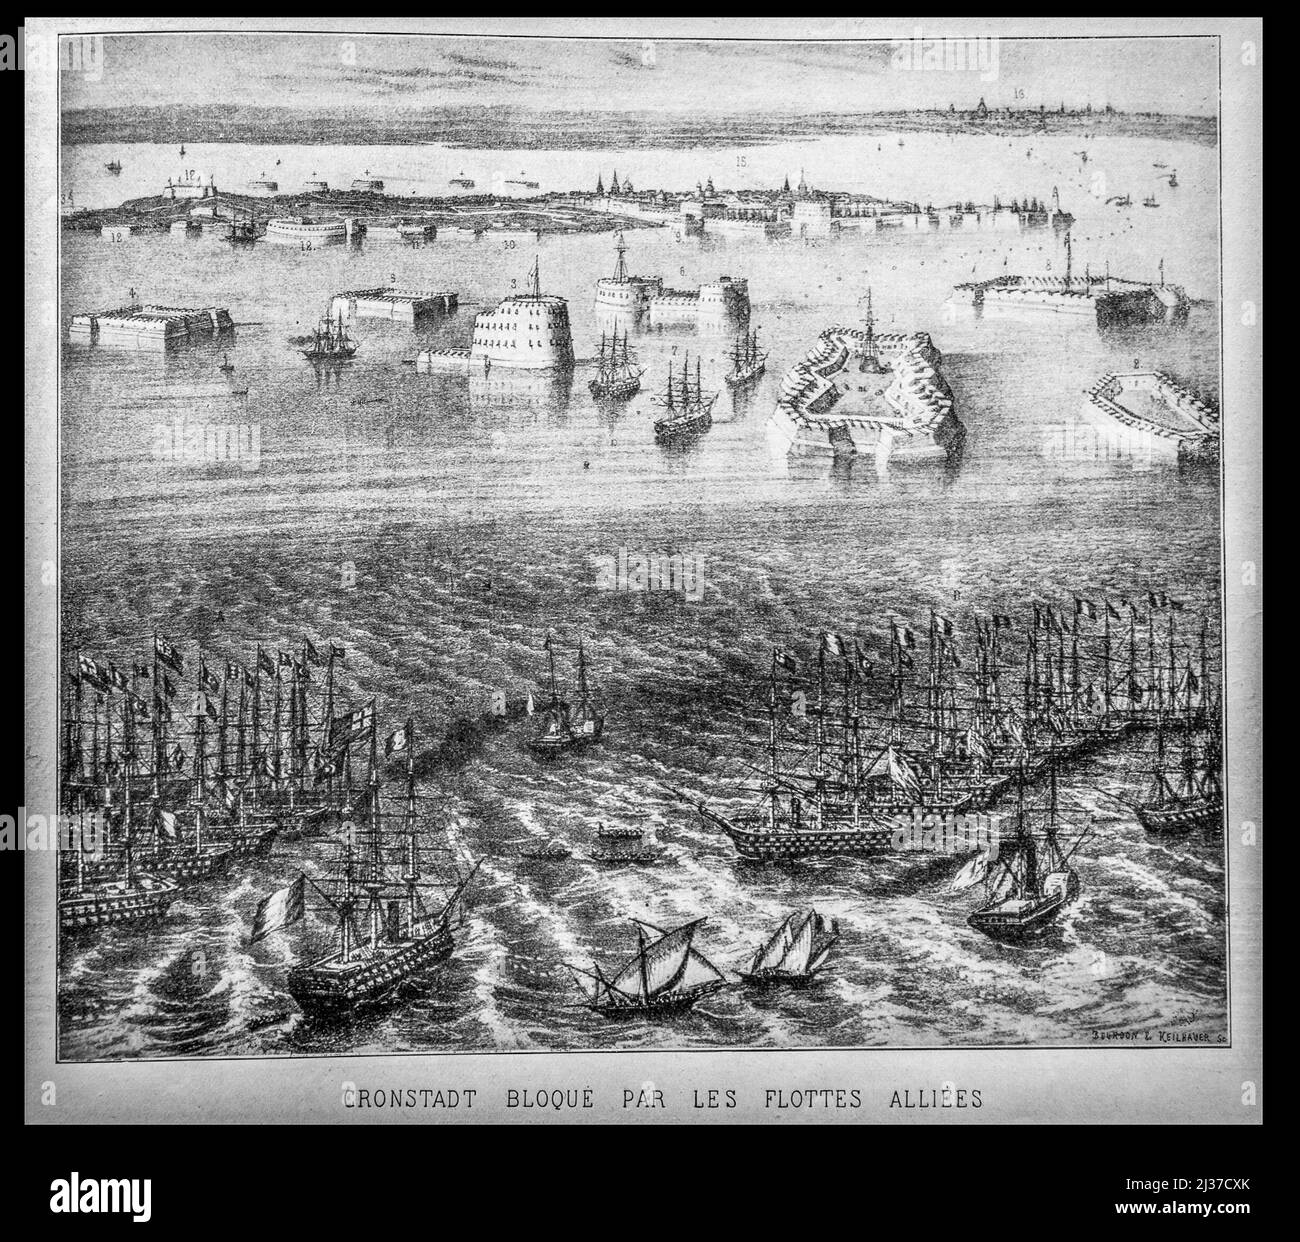 GUERRA DE CRIMEA- ''Cronstadt bloqué par les flottes alliées''...La Guerra de Crimea[e] fue un conflicto militar librado desde octubre de 1853 hasta febrero de 1856[9] Foto de stock